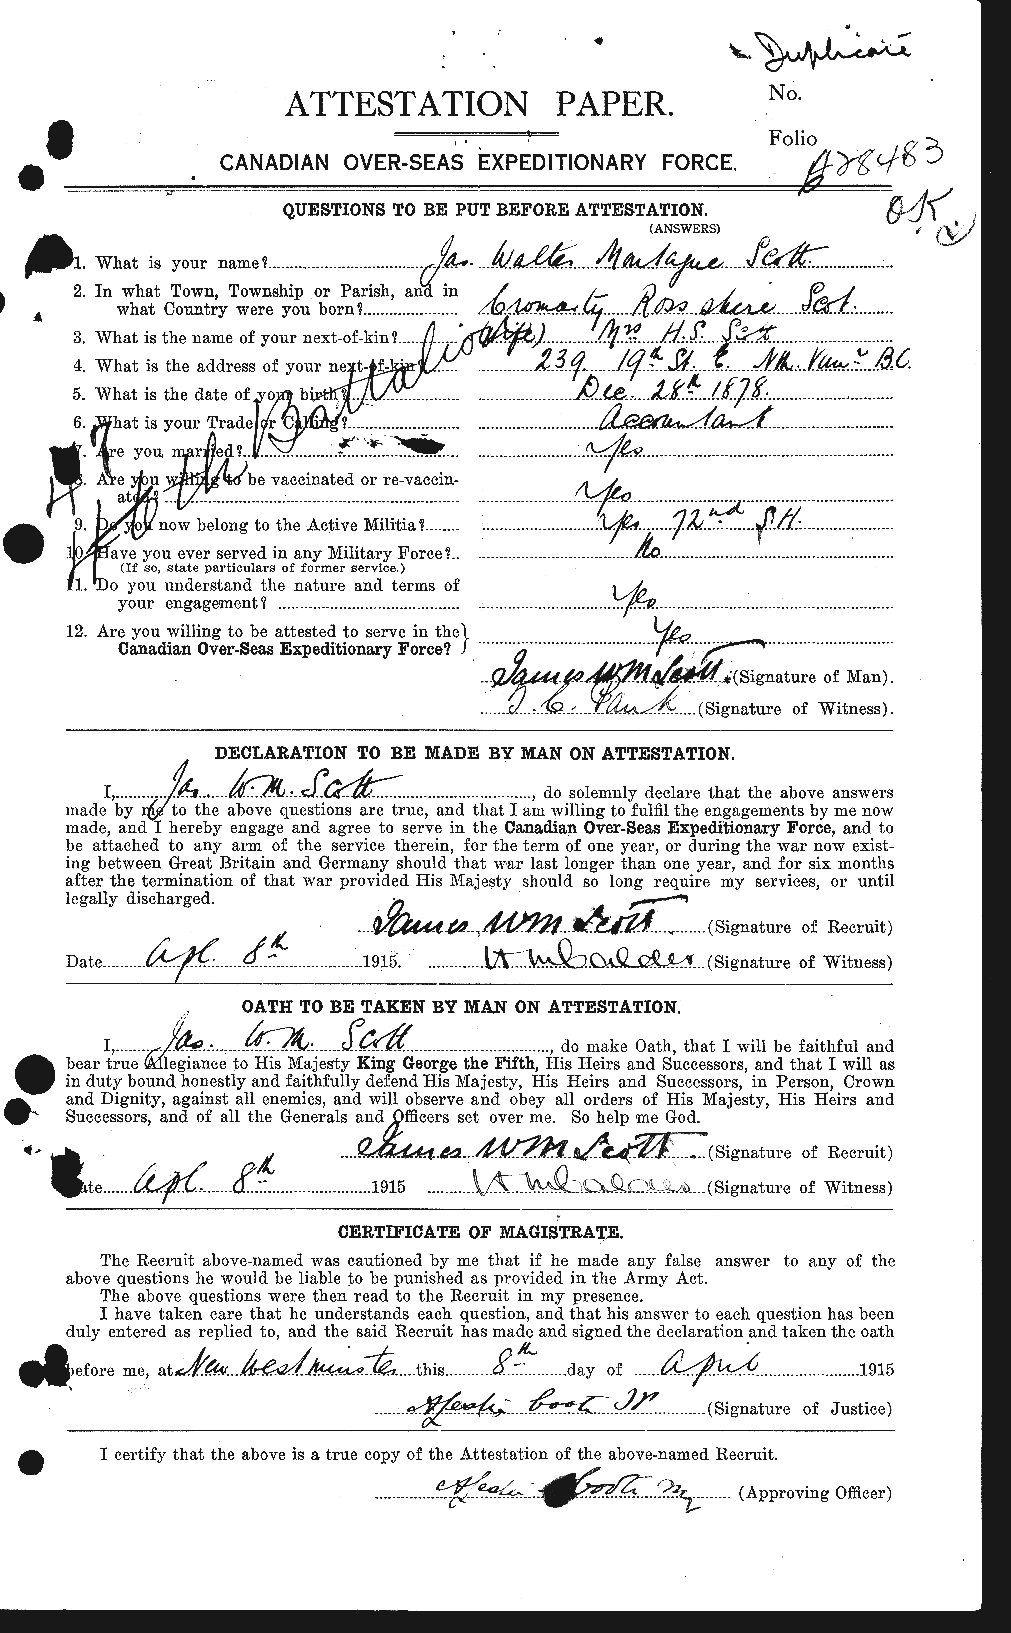 Dossiers du Personnel de la Première Guerre mondiale - CEC 085169a